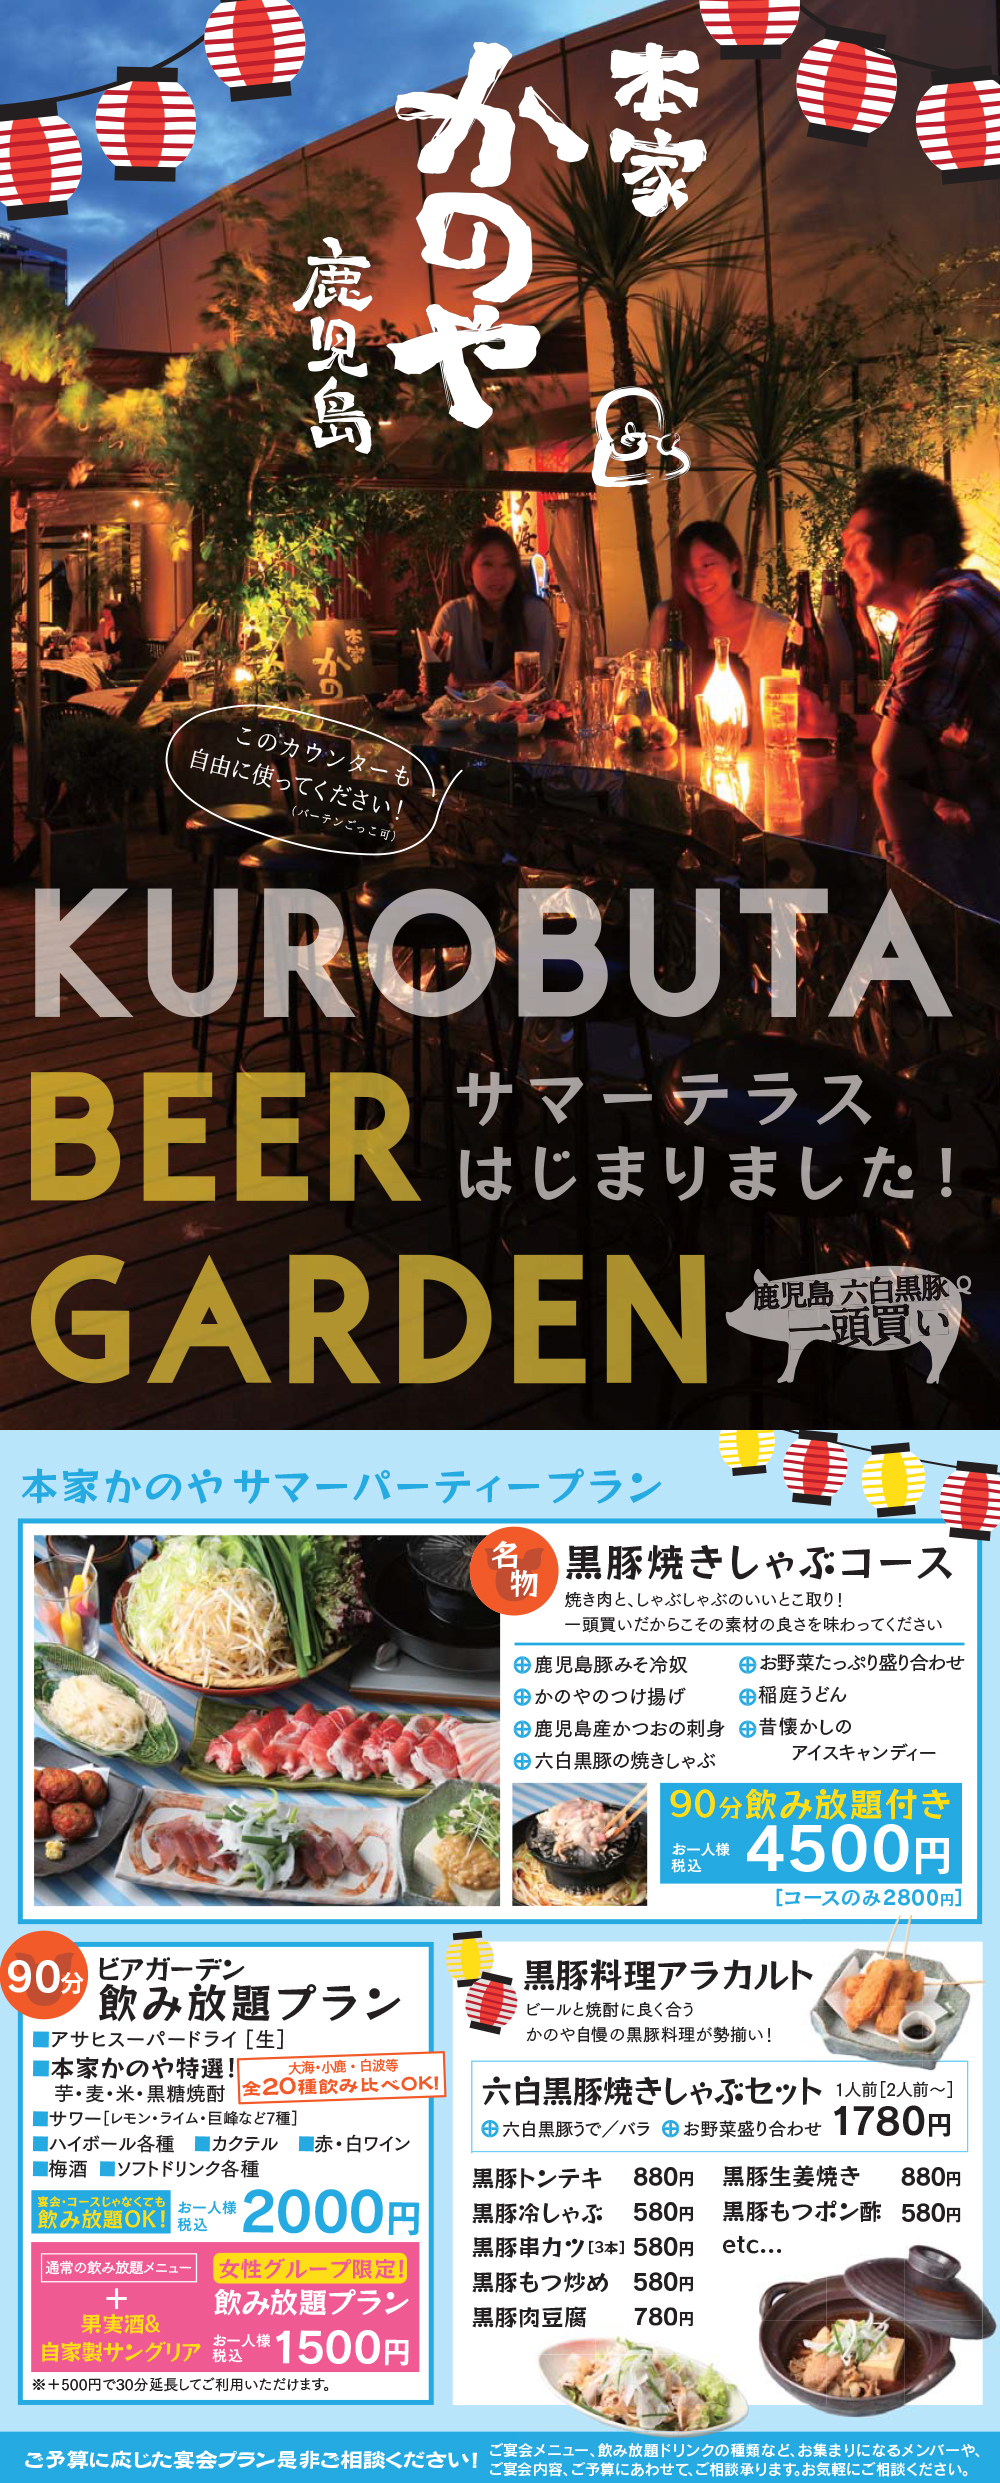 kanoya_beer.jpg